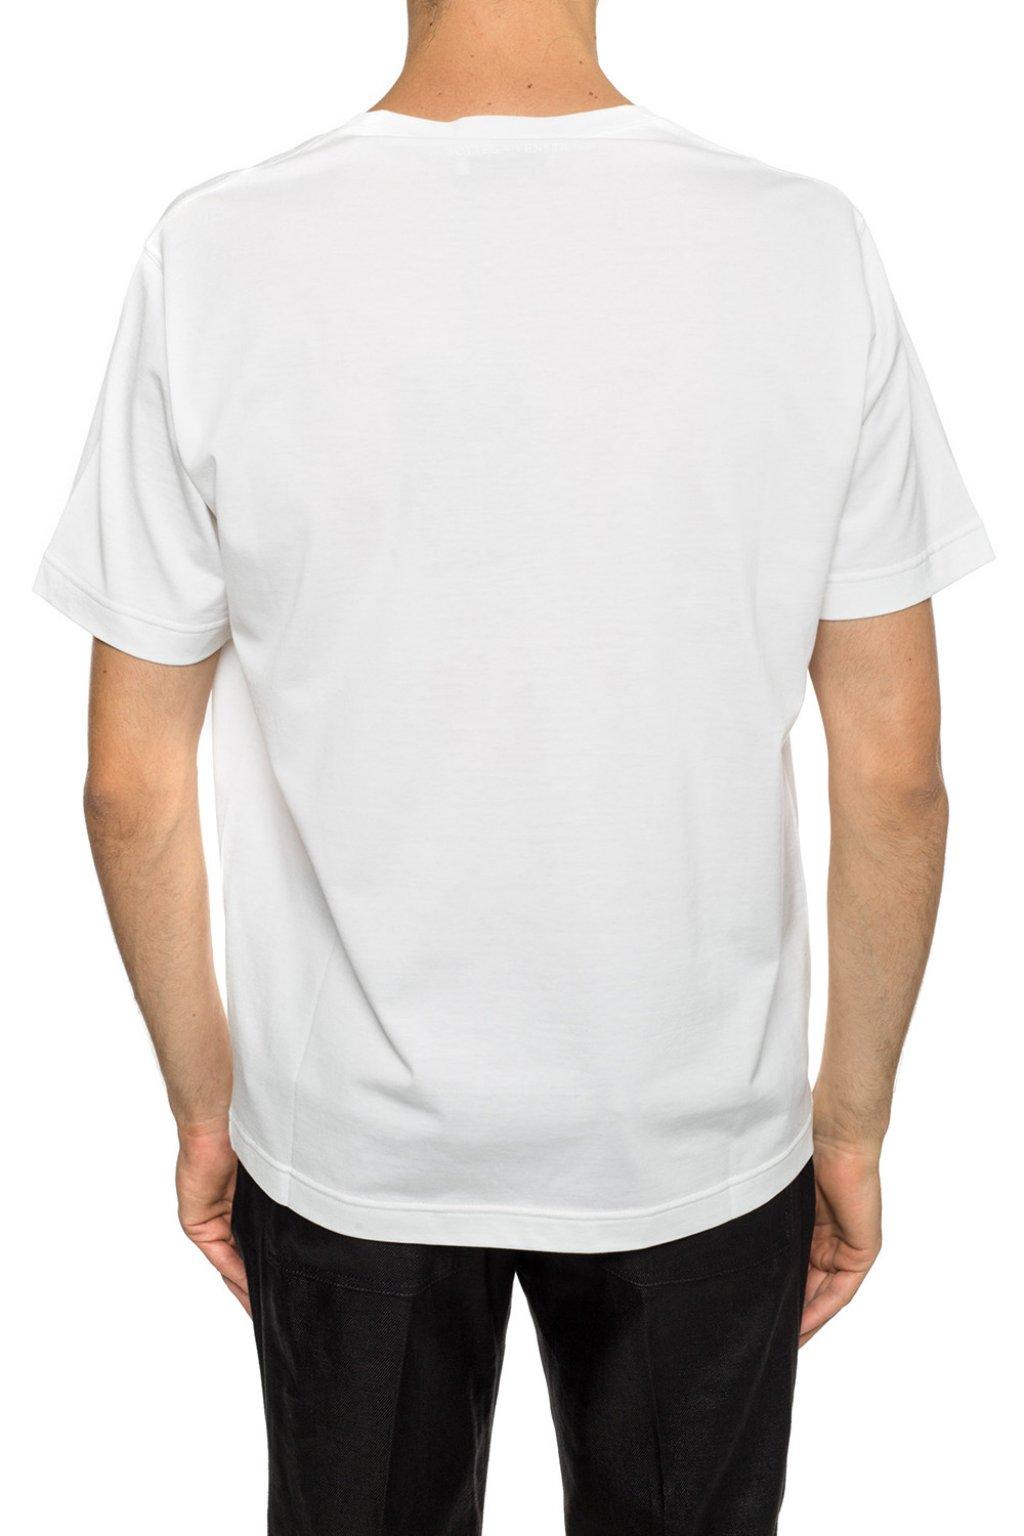 Bottega Veneta Cotton Logo T-shirt in White for Men - Lyst